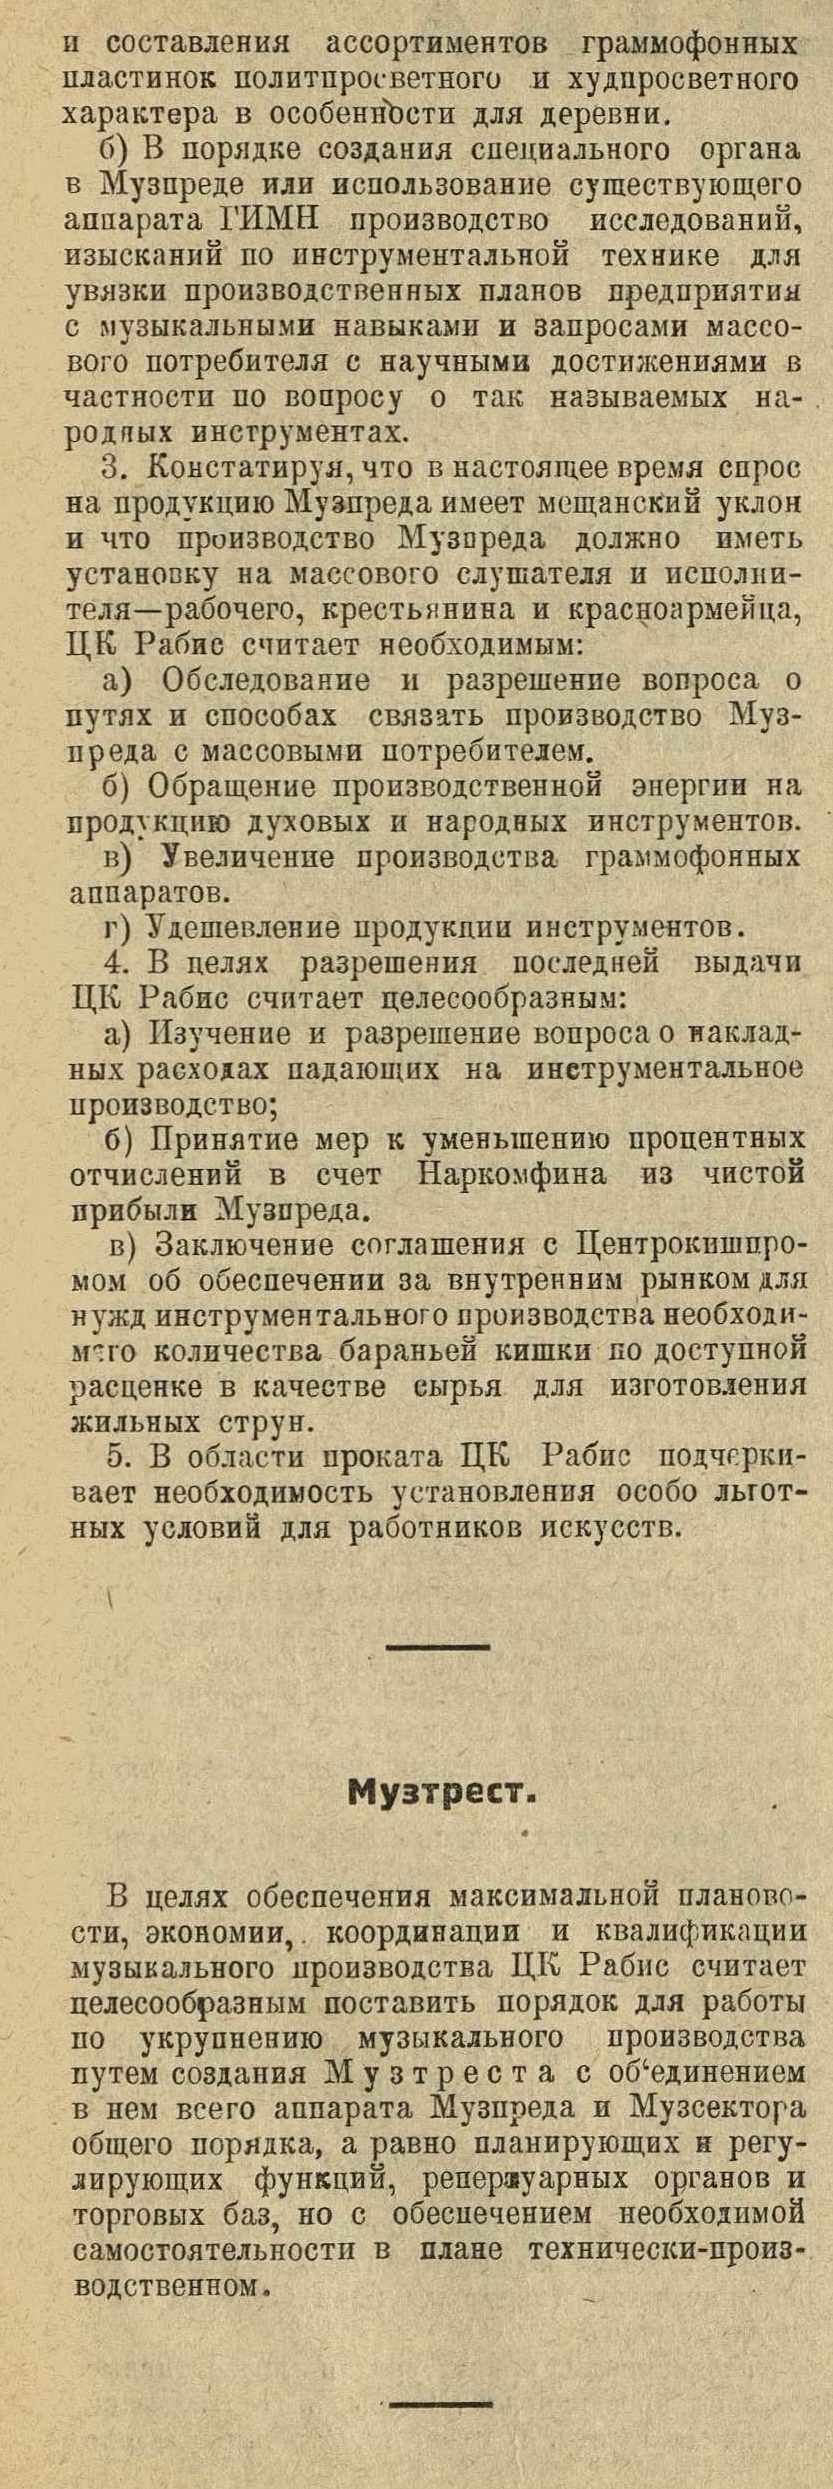 Резолюция ЦК Рабис и Музпреда. Музтрест